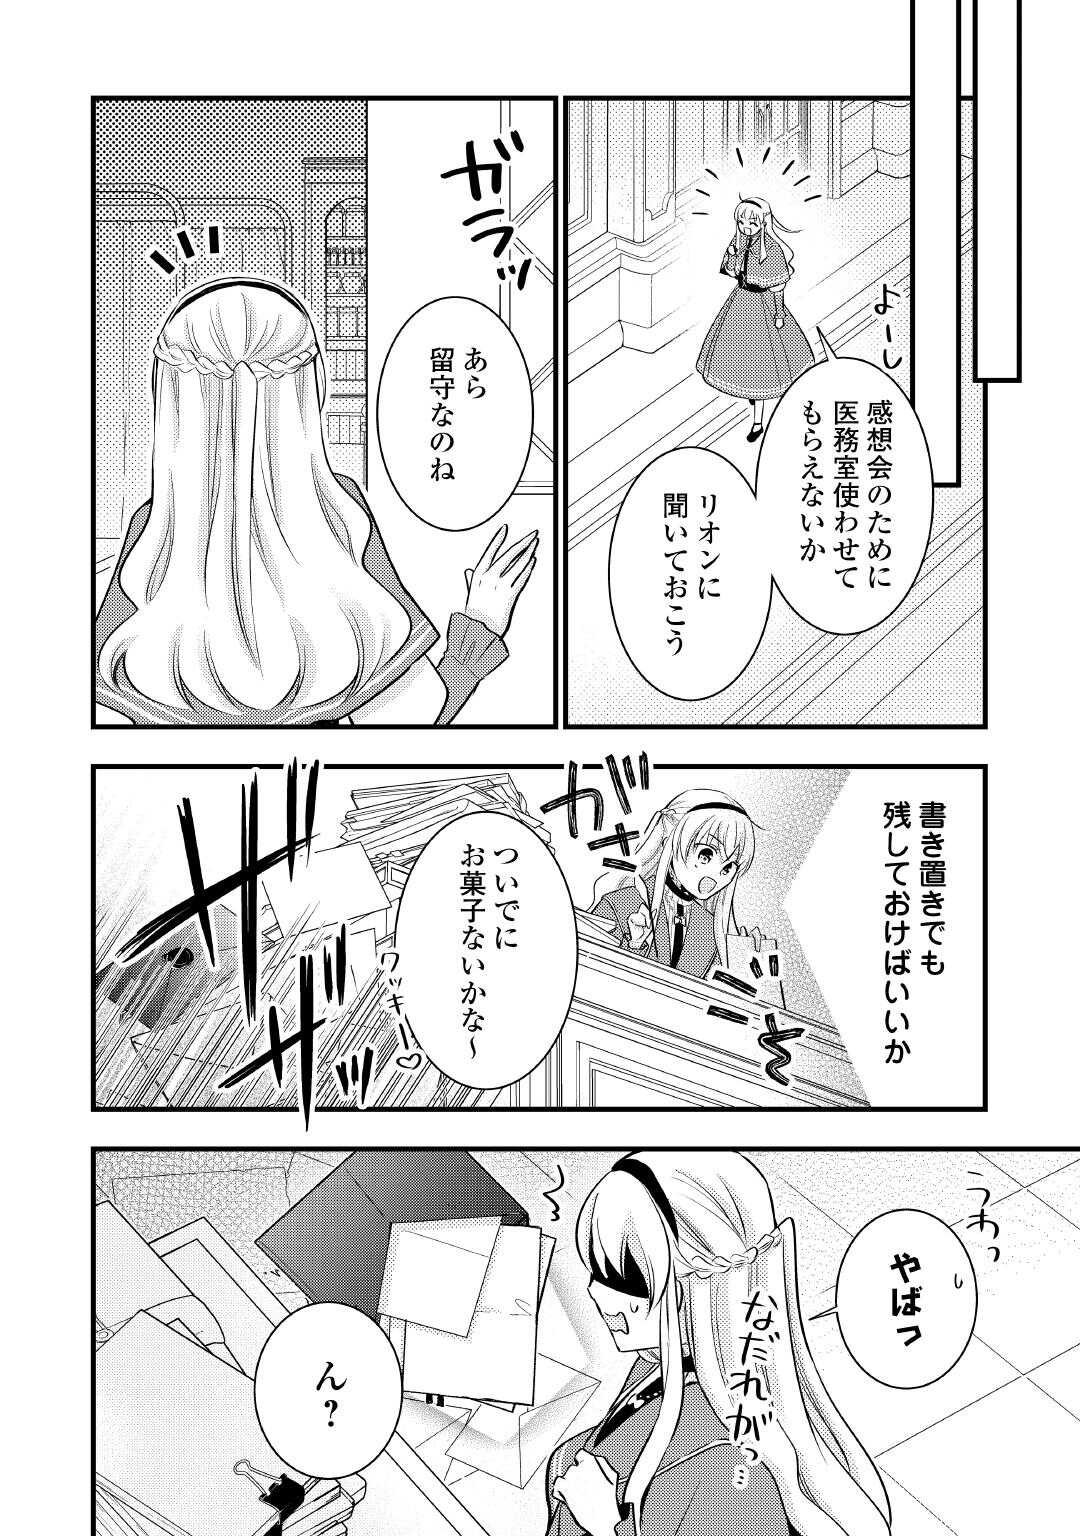 Akuyaku Reijou wa Heroine wo Ijimeteiru Baai de wa Nai - Chapter 21.5 - Page 1